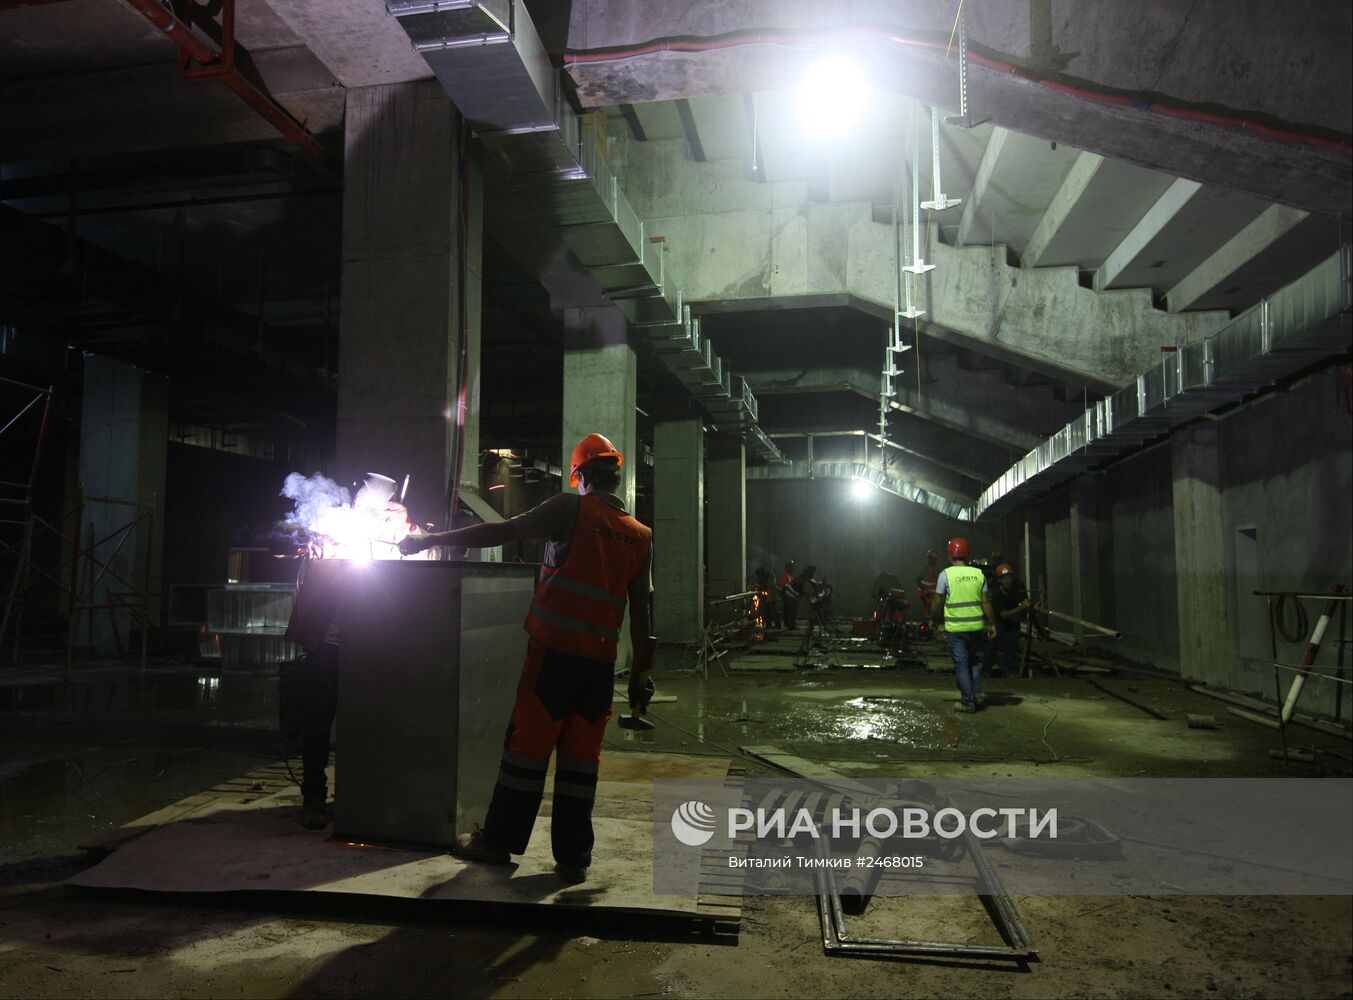 Строительство стадиона ФК "Краснодар"